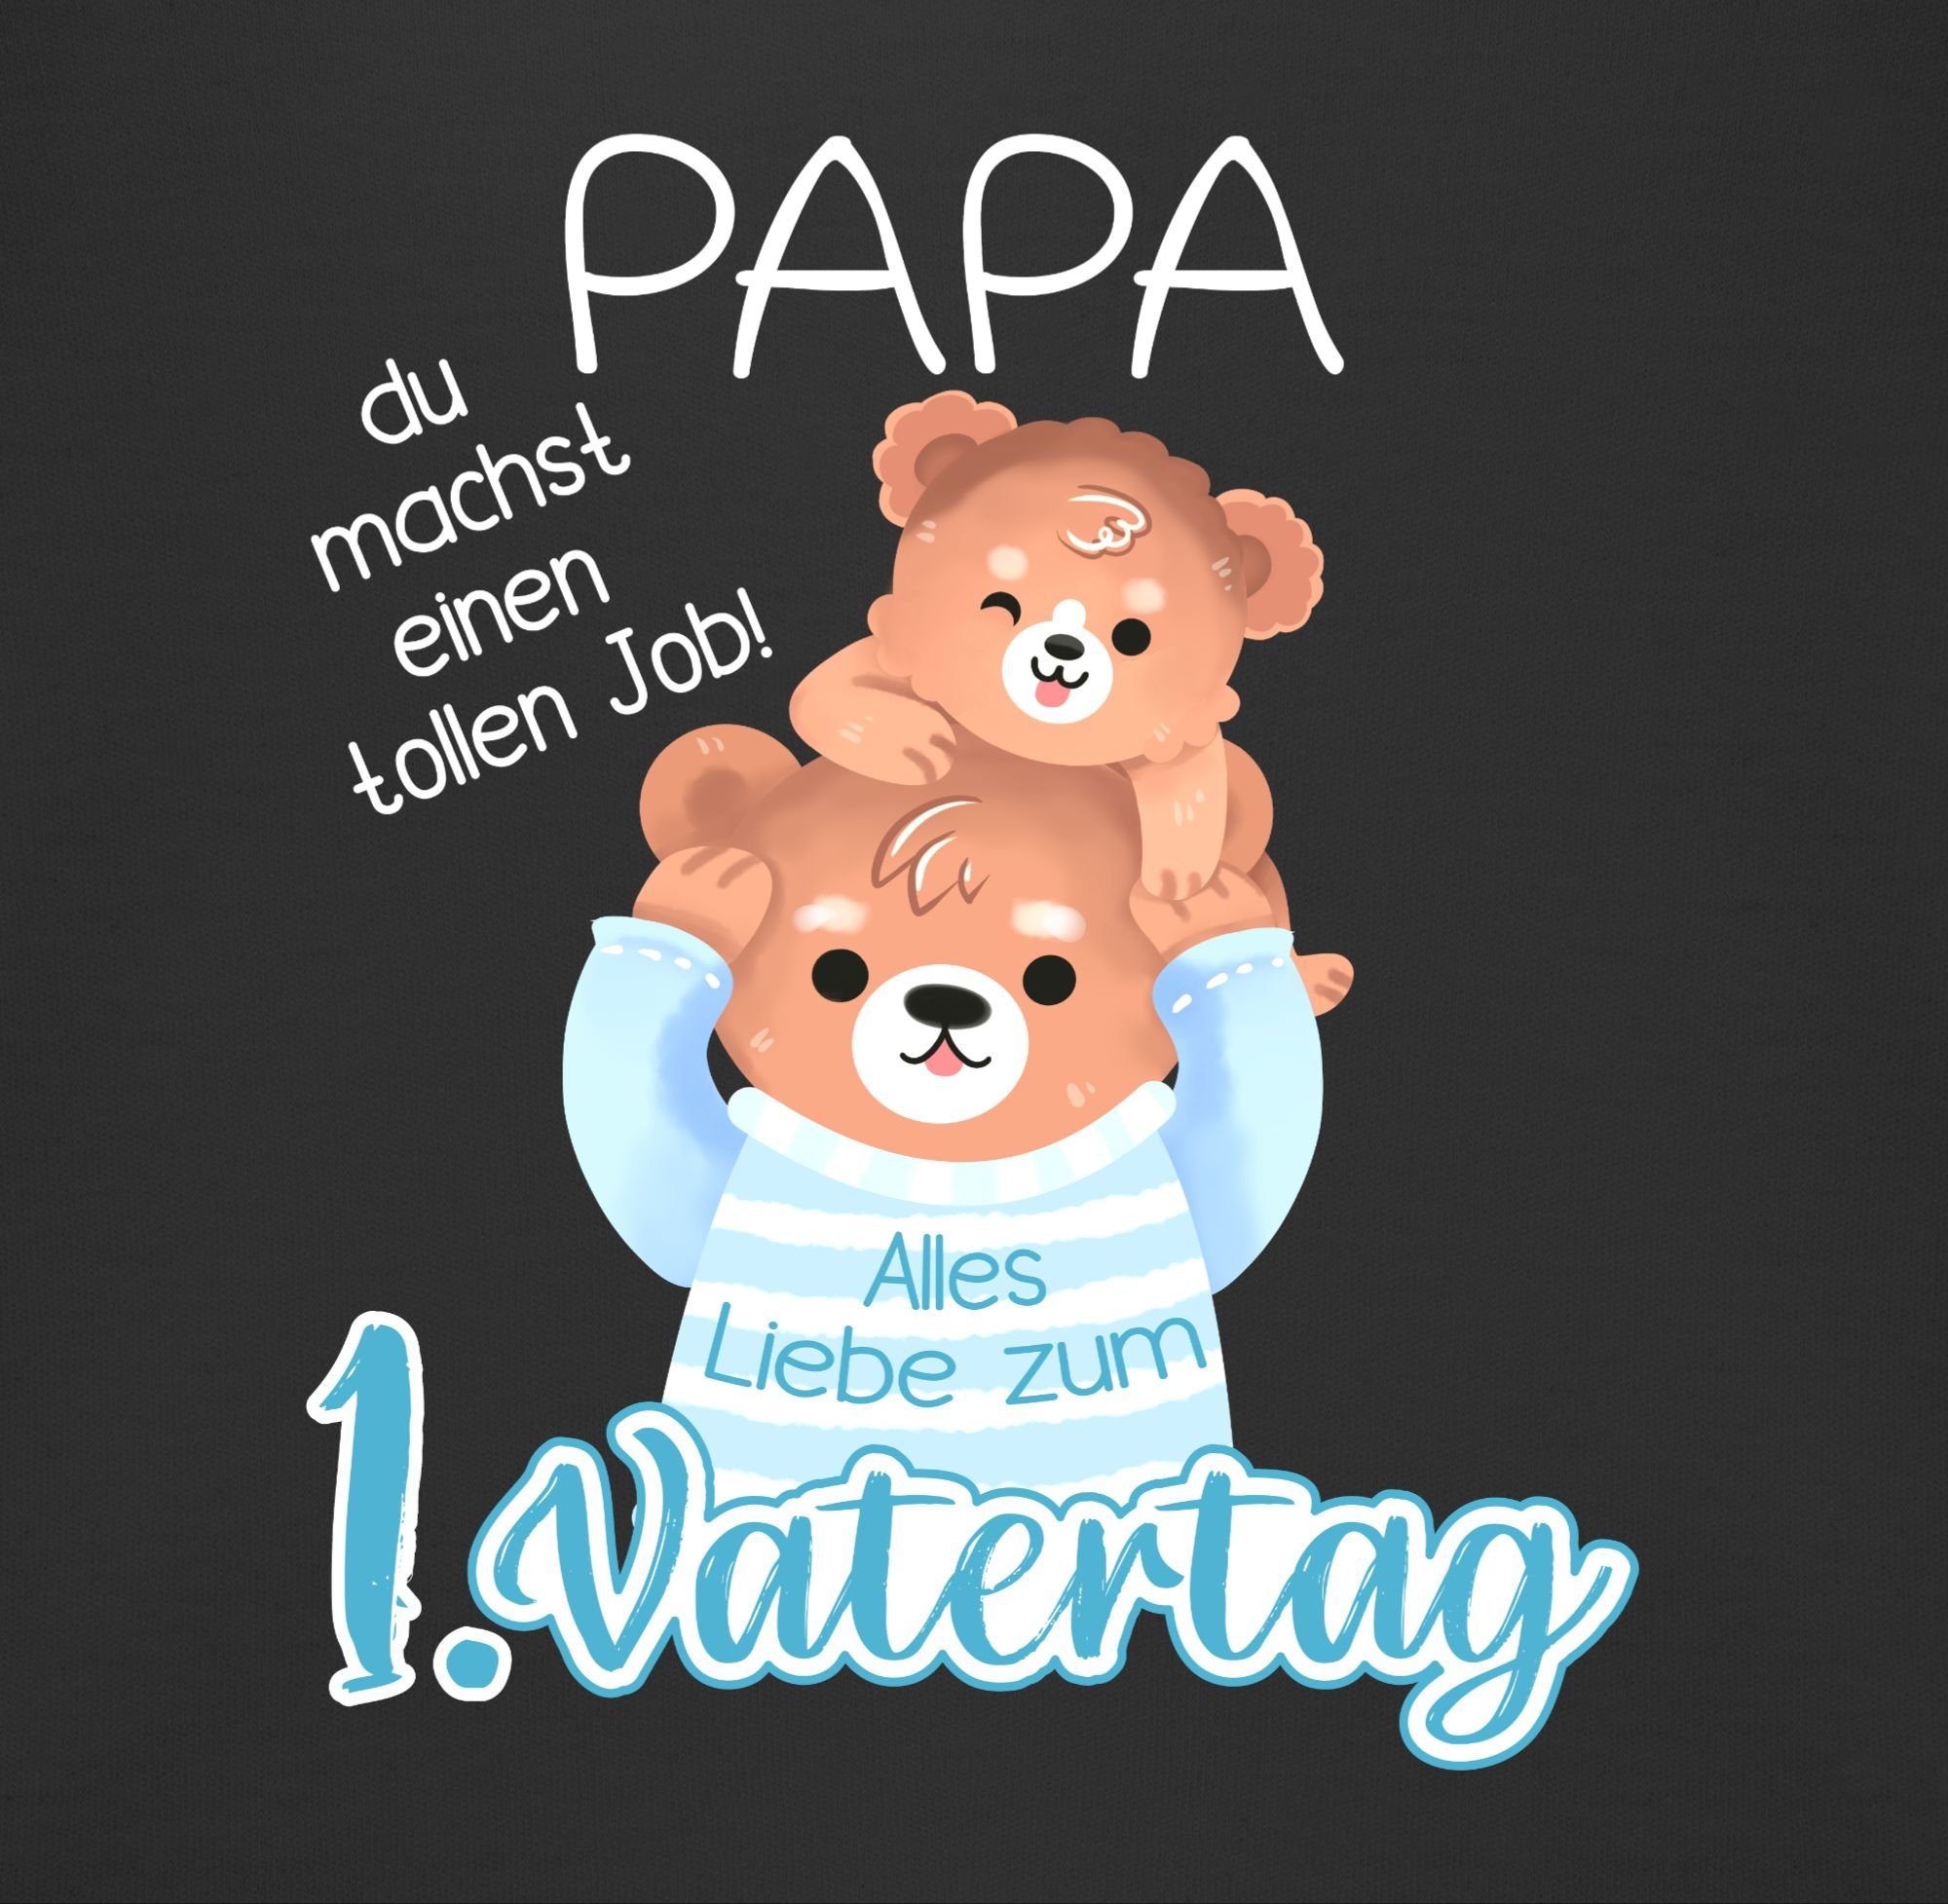 Shirtracer Lätzchen Alles Liebe zum Geschenk Schwarz Vatertag Baby und 3 Bär - Vatertag Bär, Baby 1. Papa